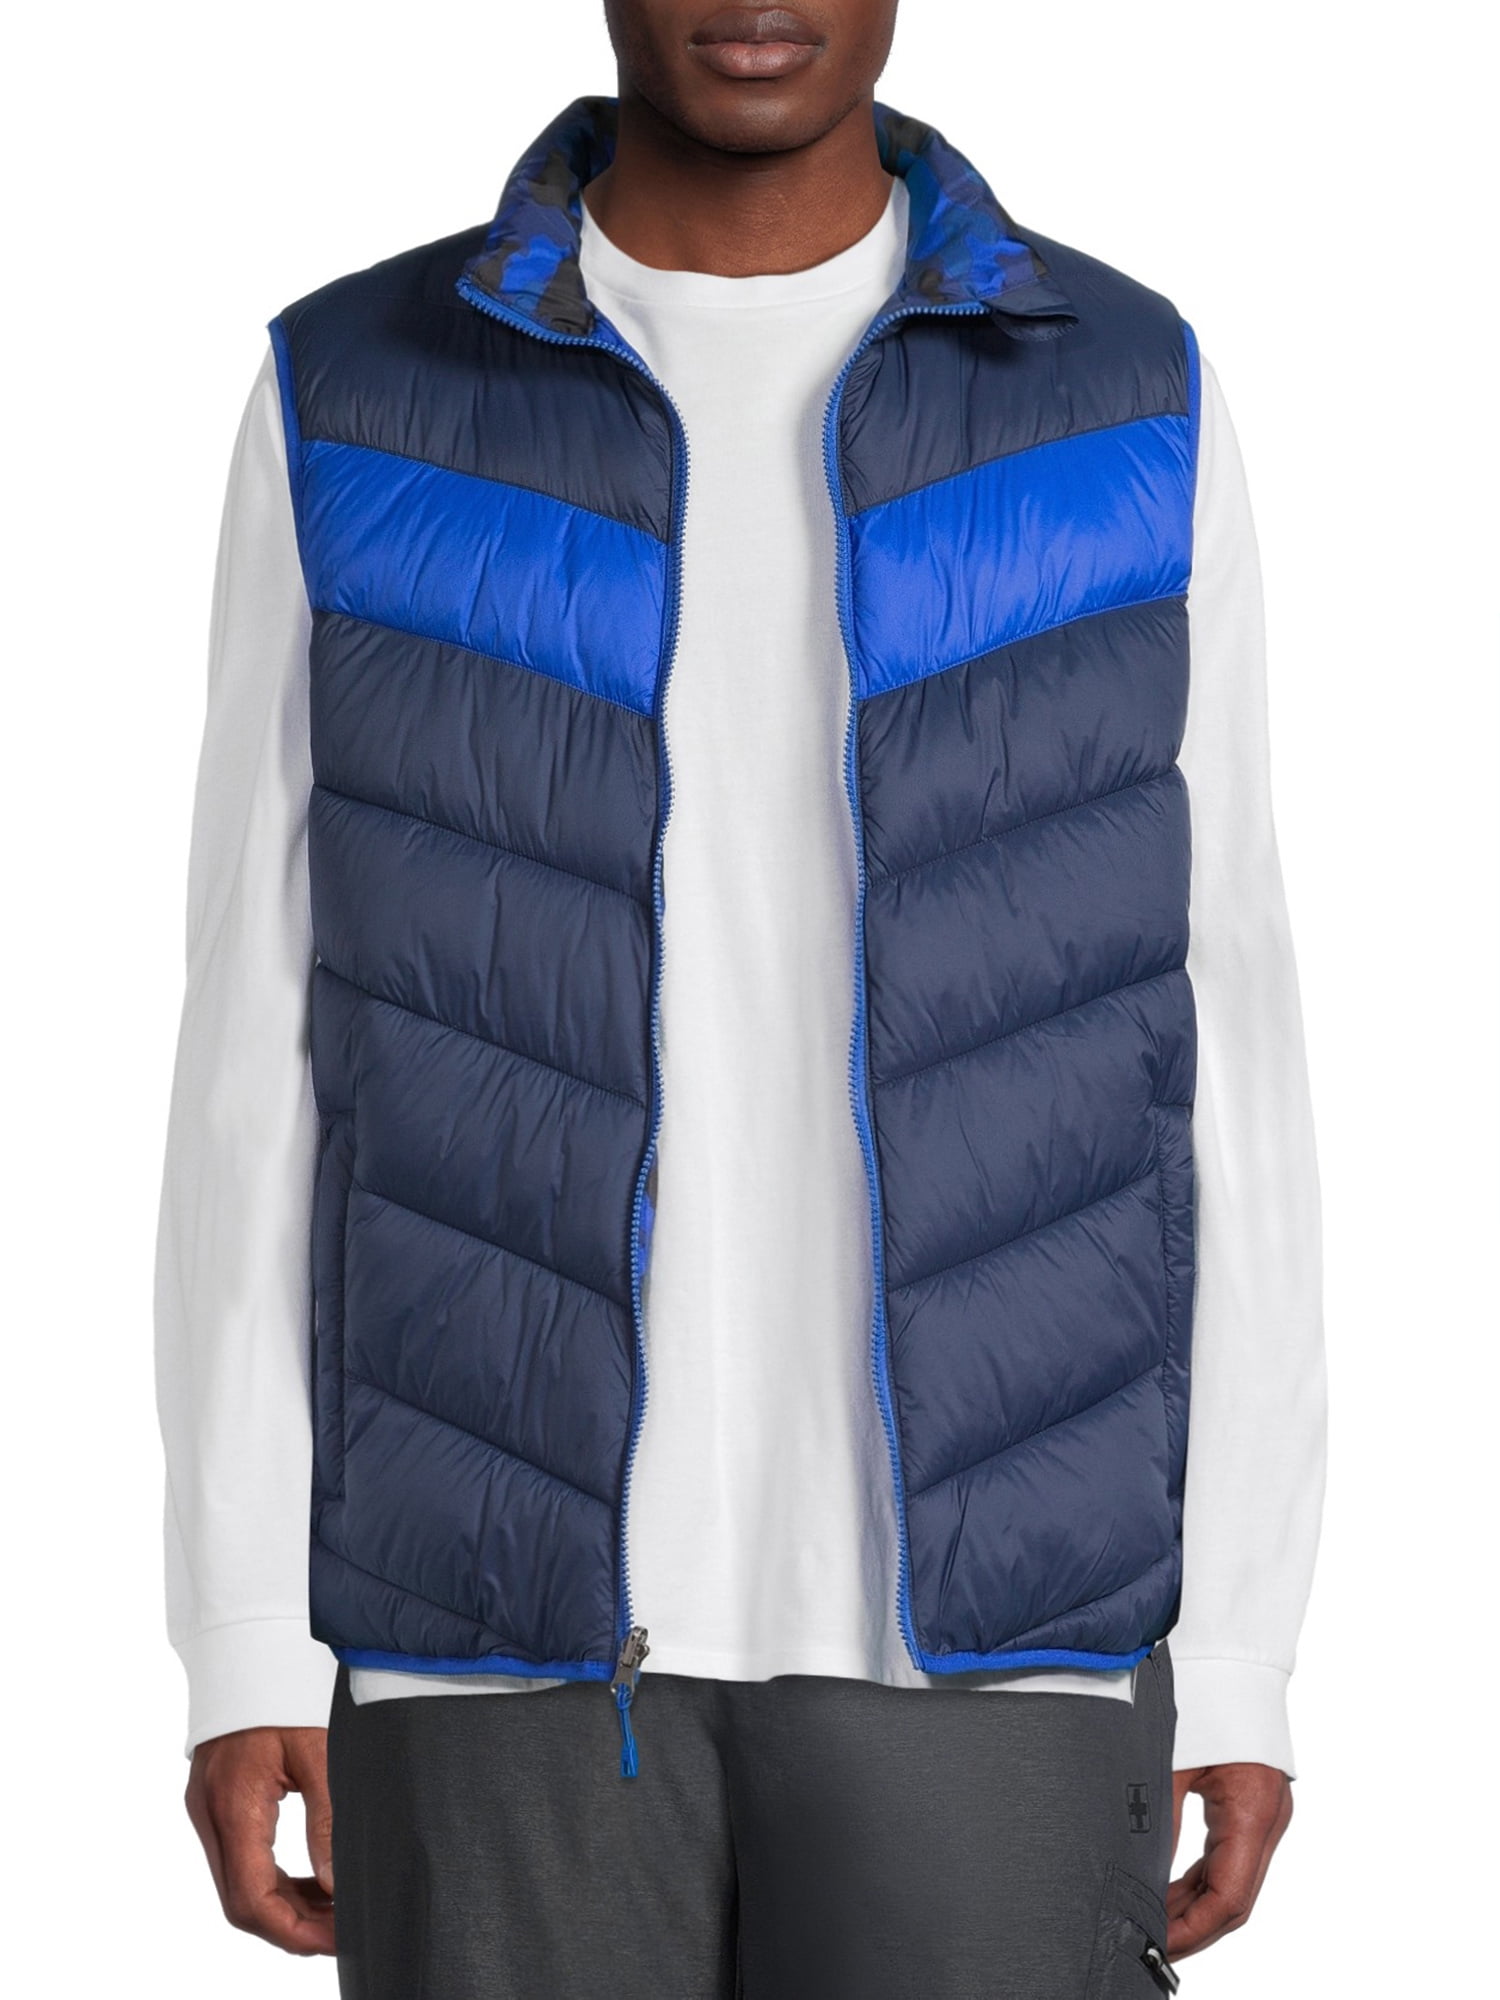 SwissTech Men's Reversible Puffer Vest, Up to Size 3XL - Walmart.com